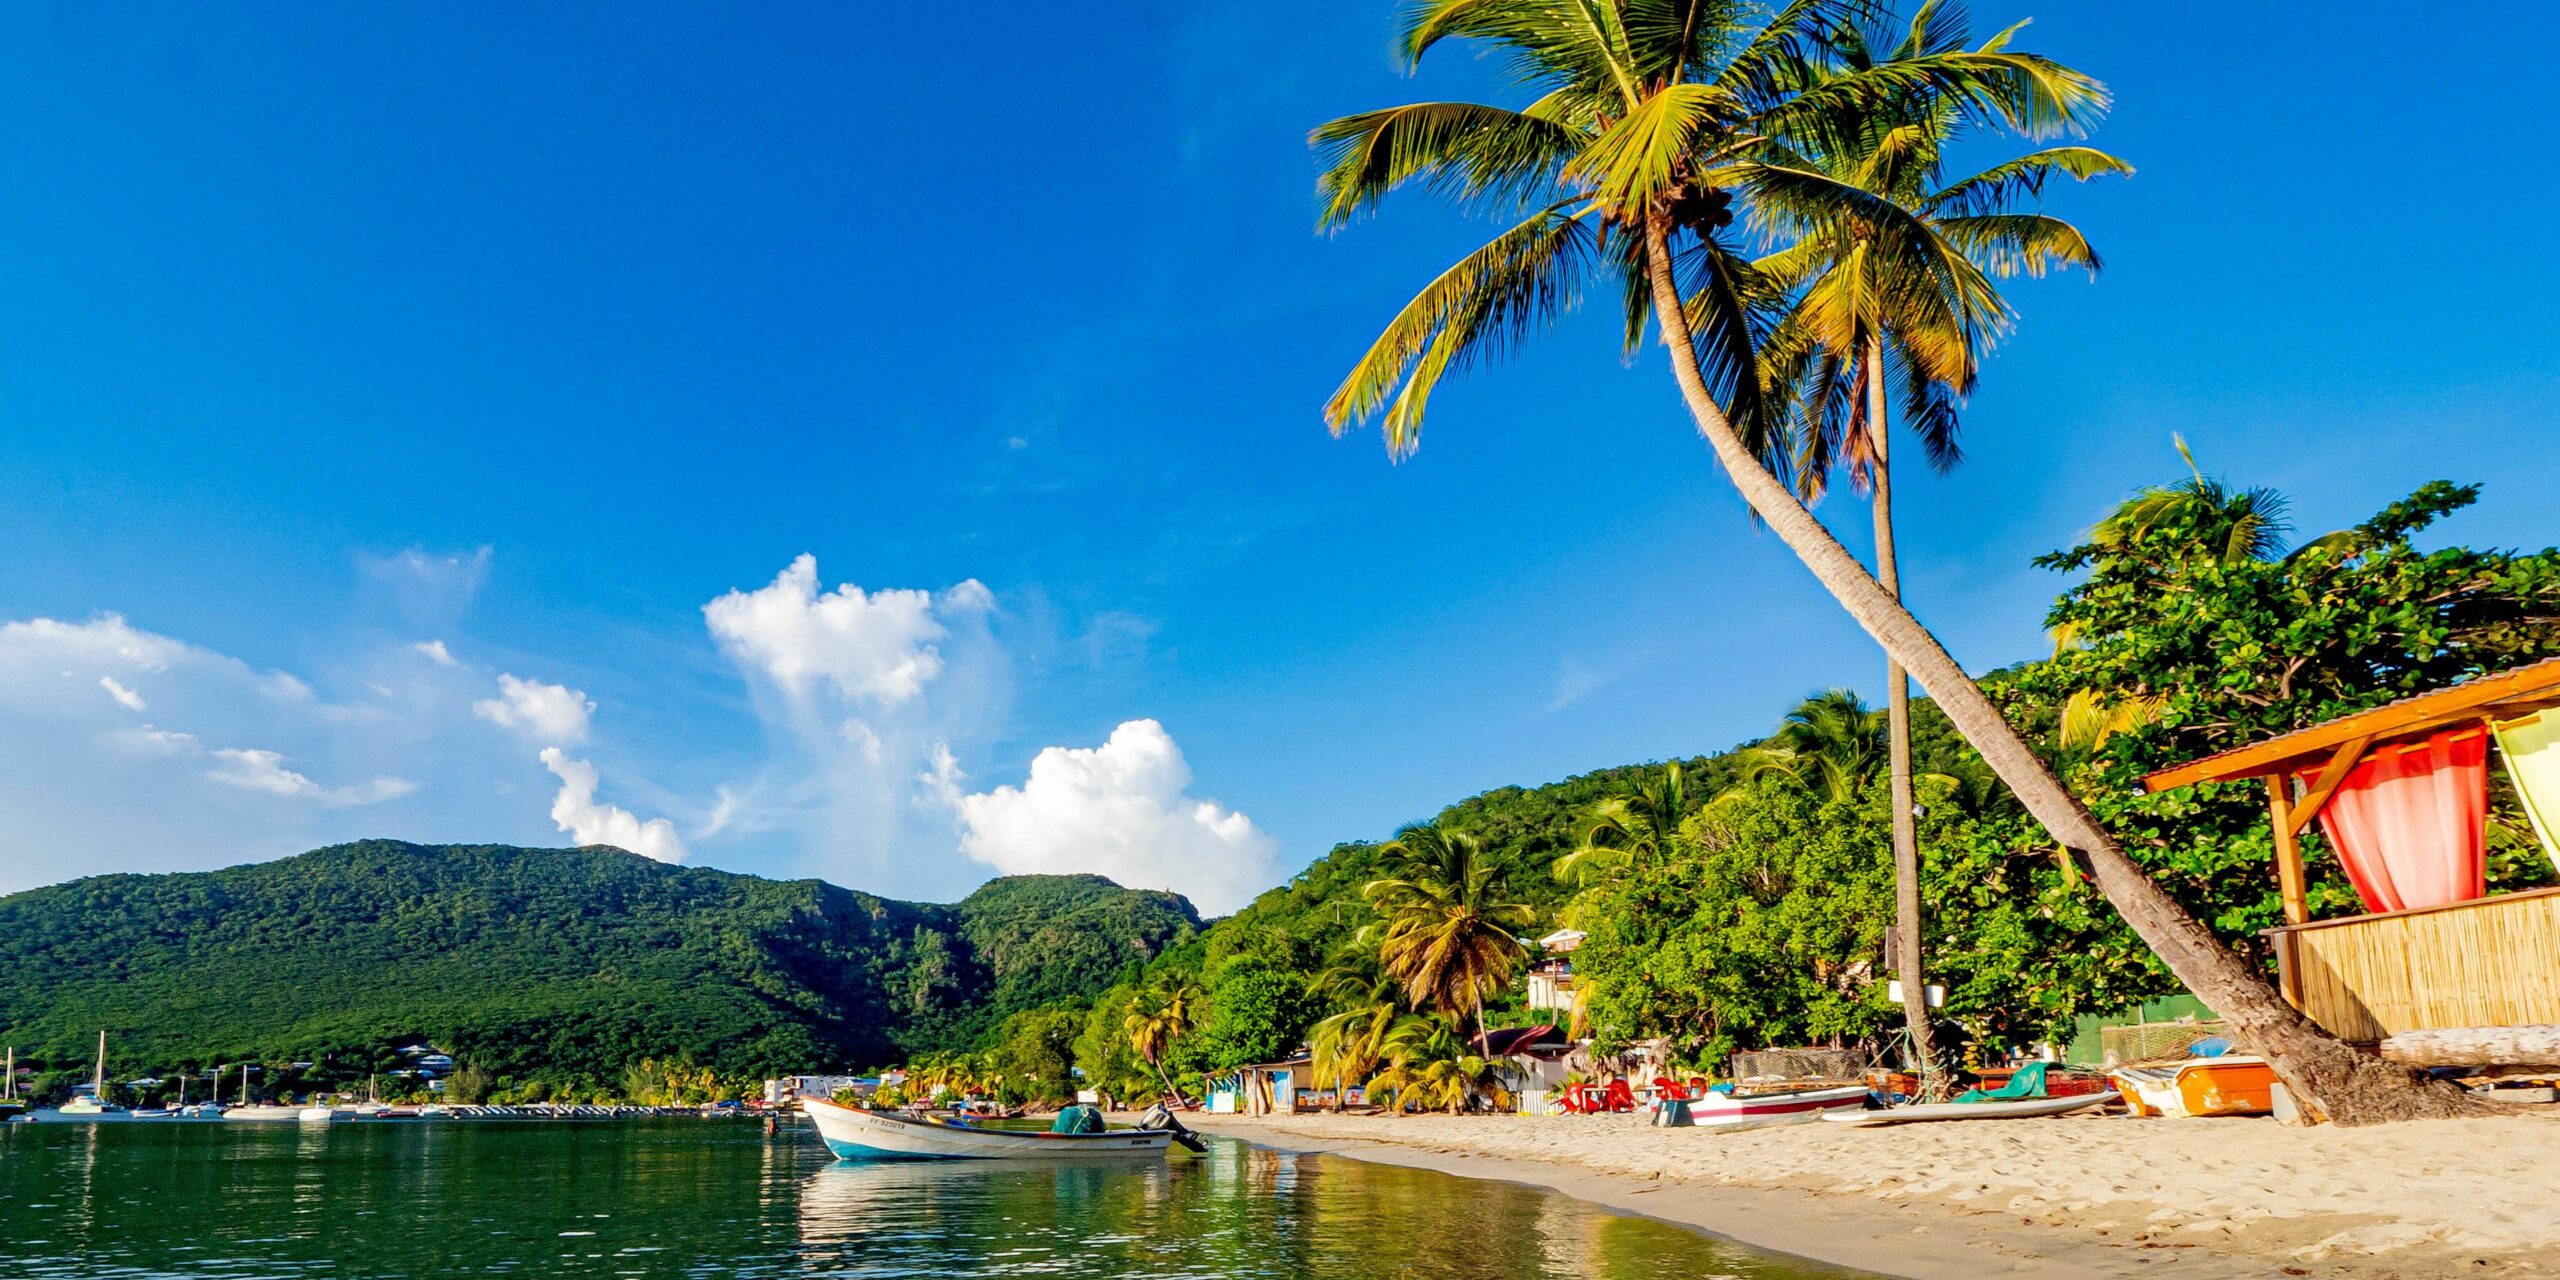 Les choses à voir et à faire pendant des vacances en couple en Martinique